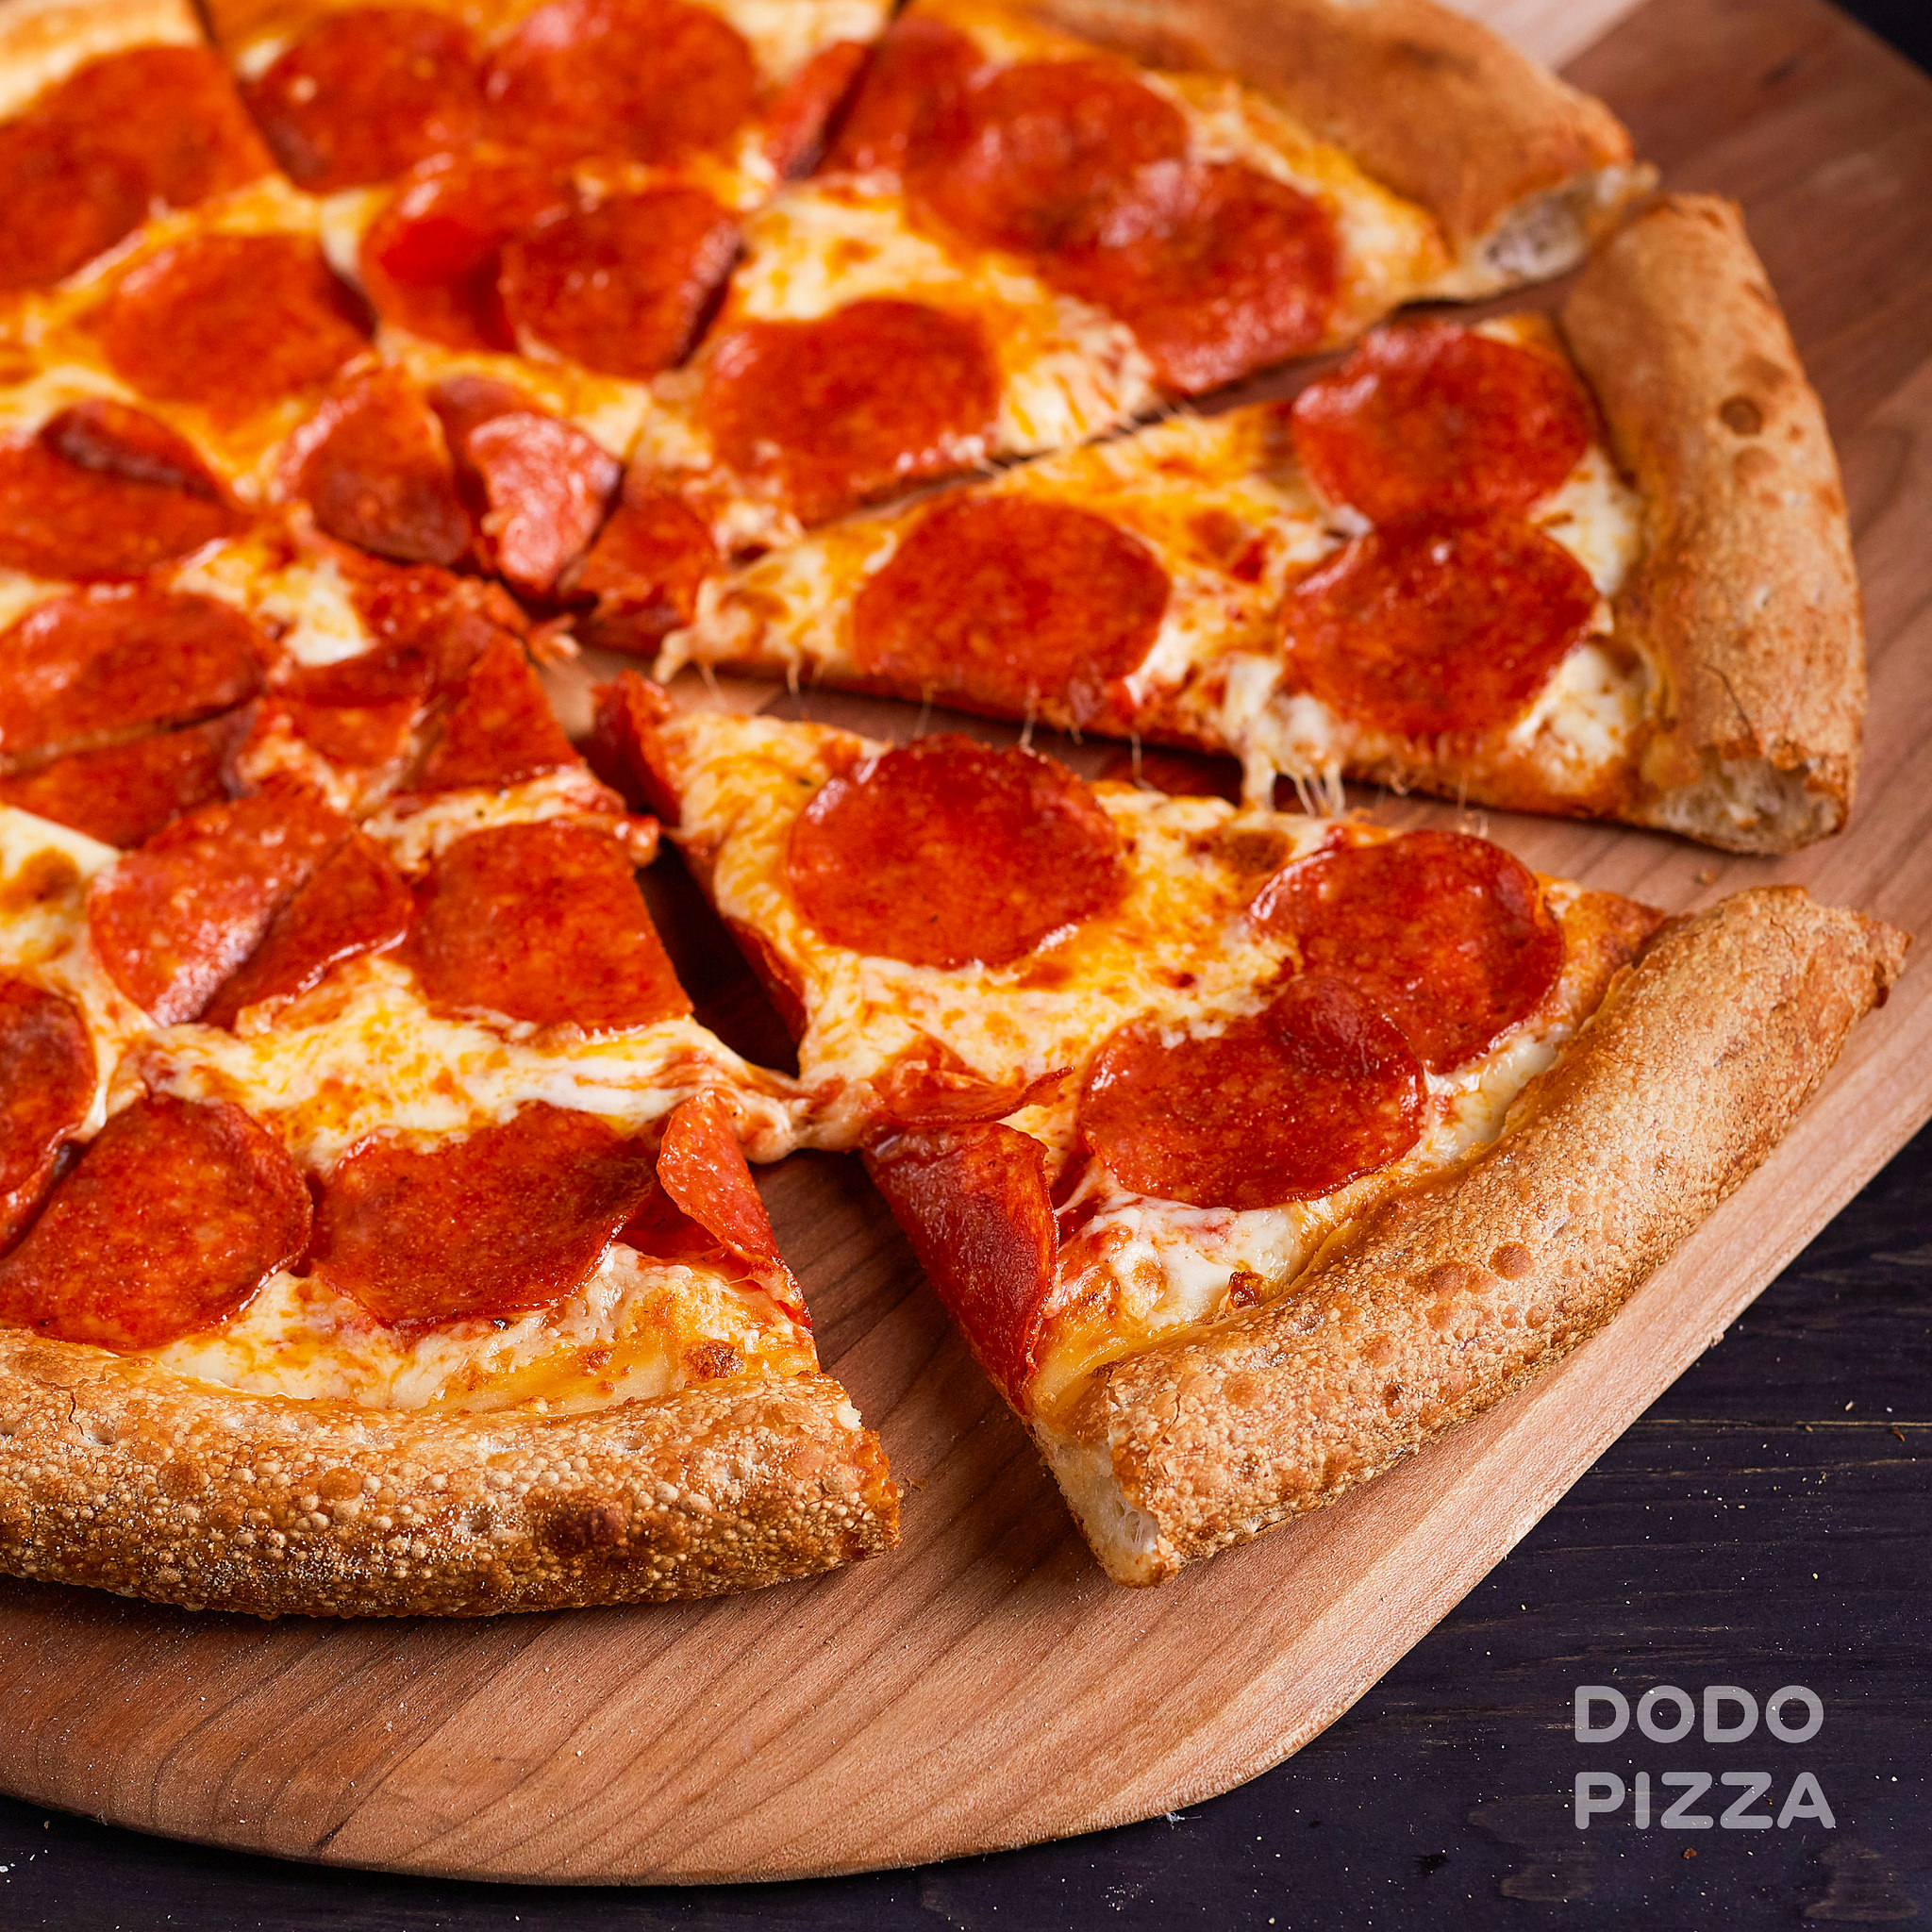 фото пиццы пепперони в додо пицца фото 1